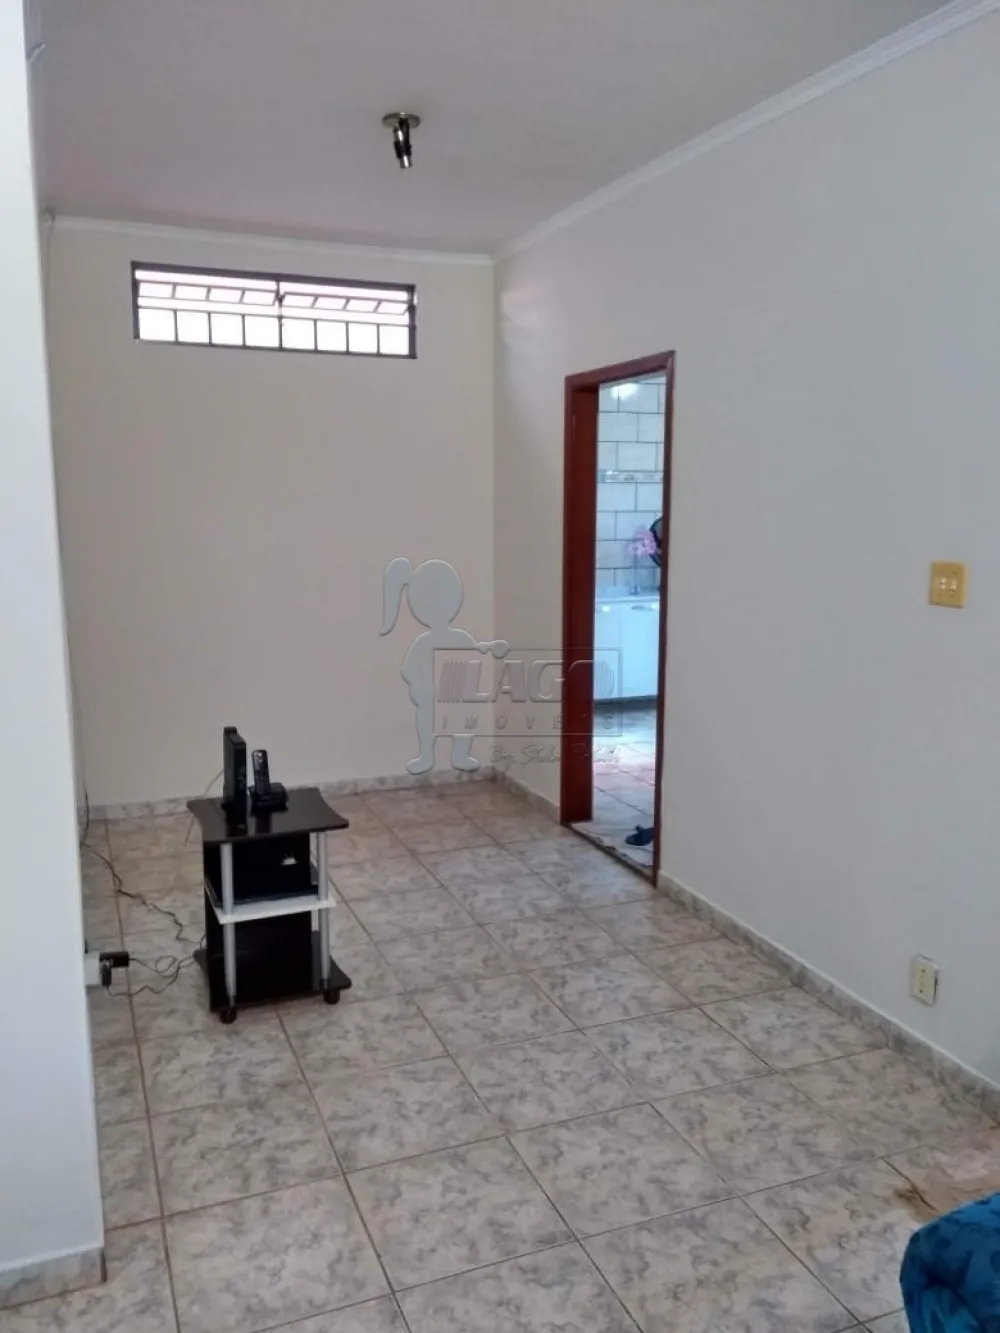 Comprar Casas / Padrão em Ribeirão Preto R$ 297.000,00 - Foto 4